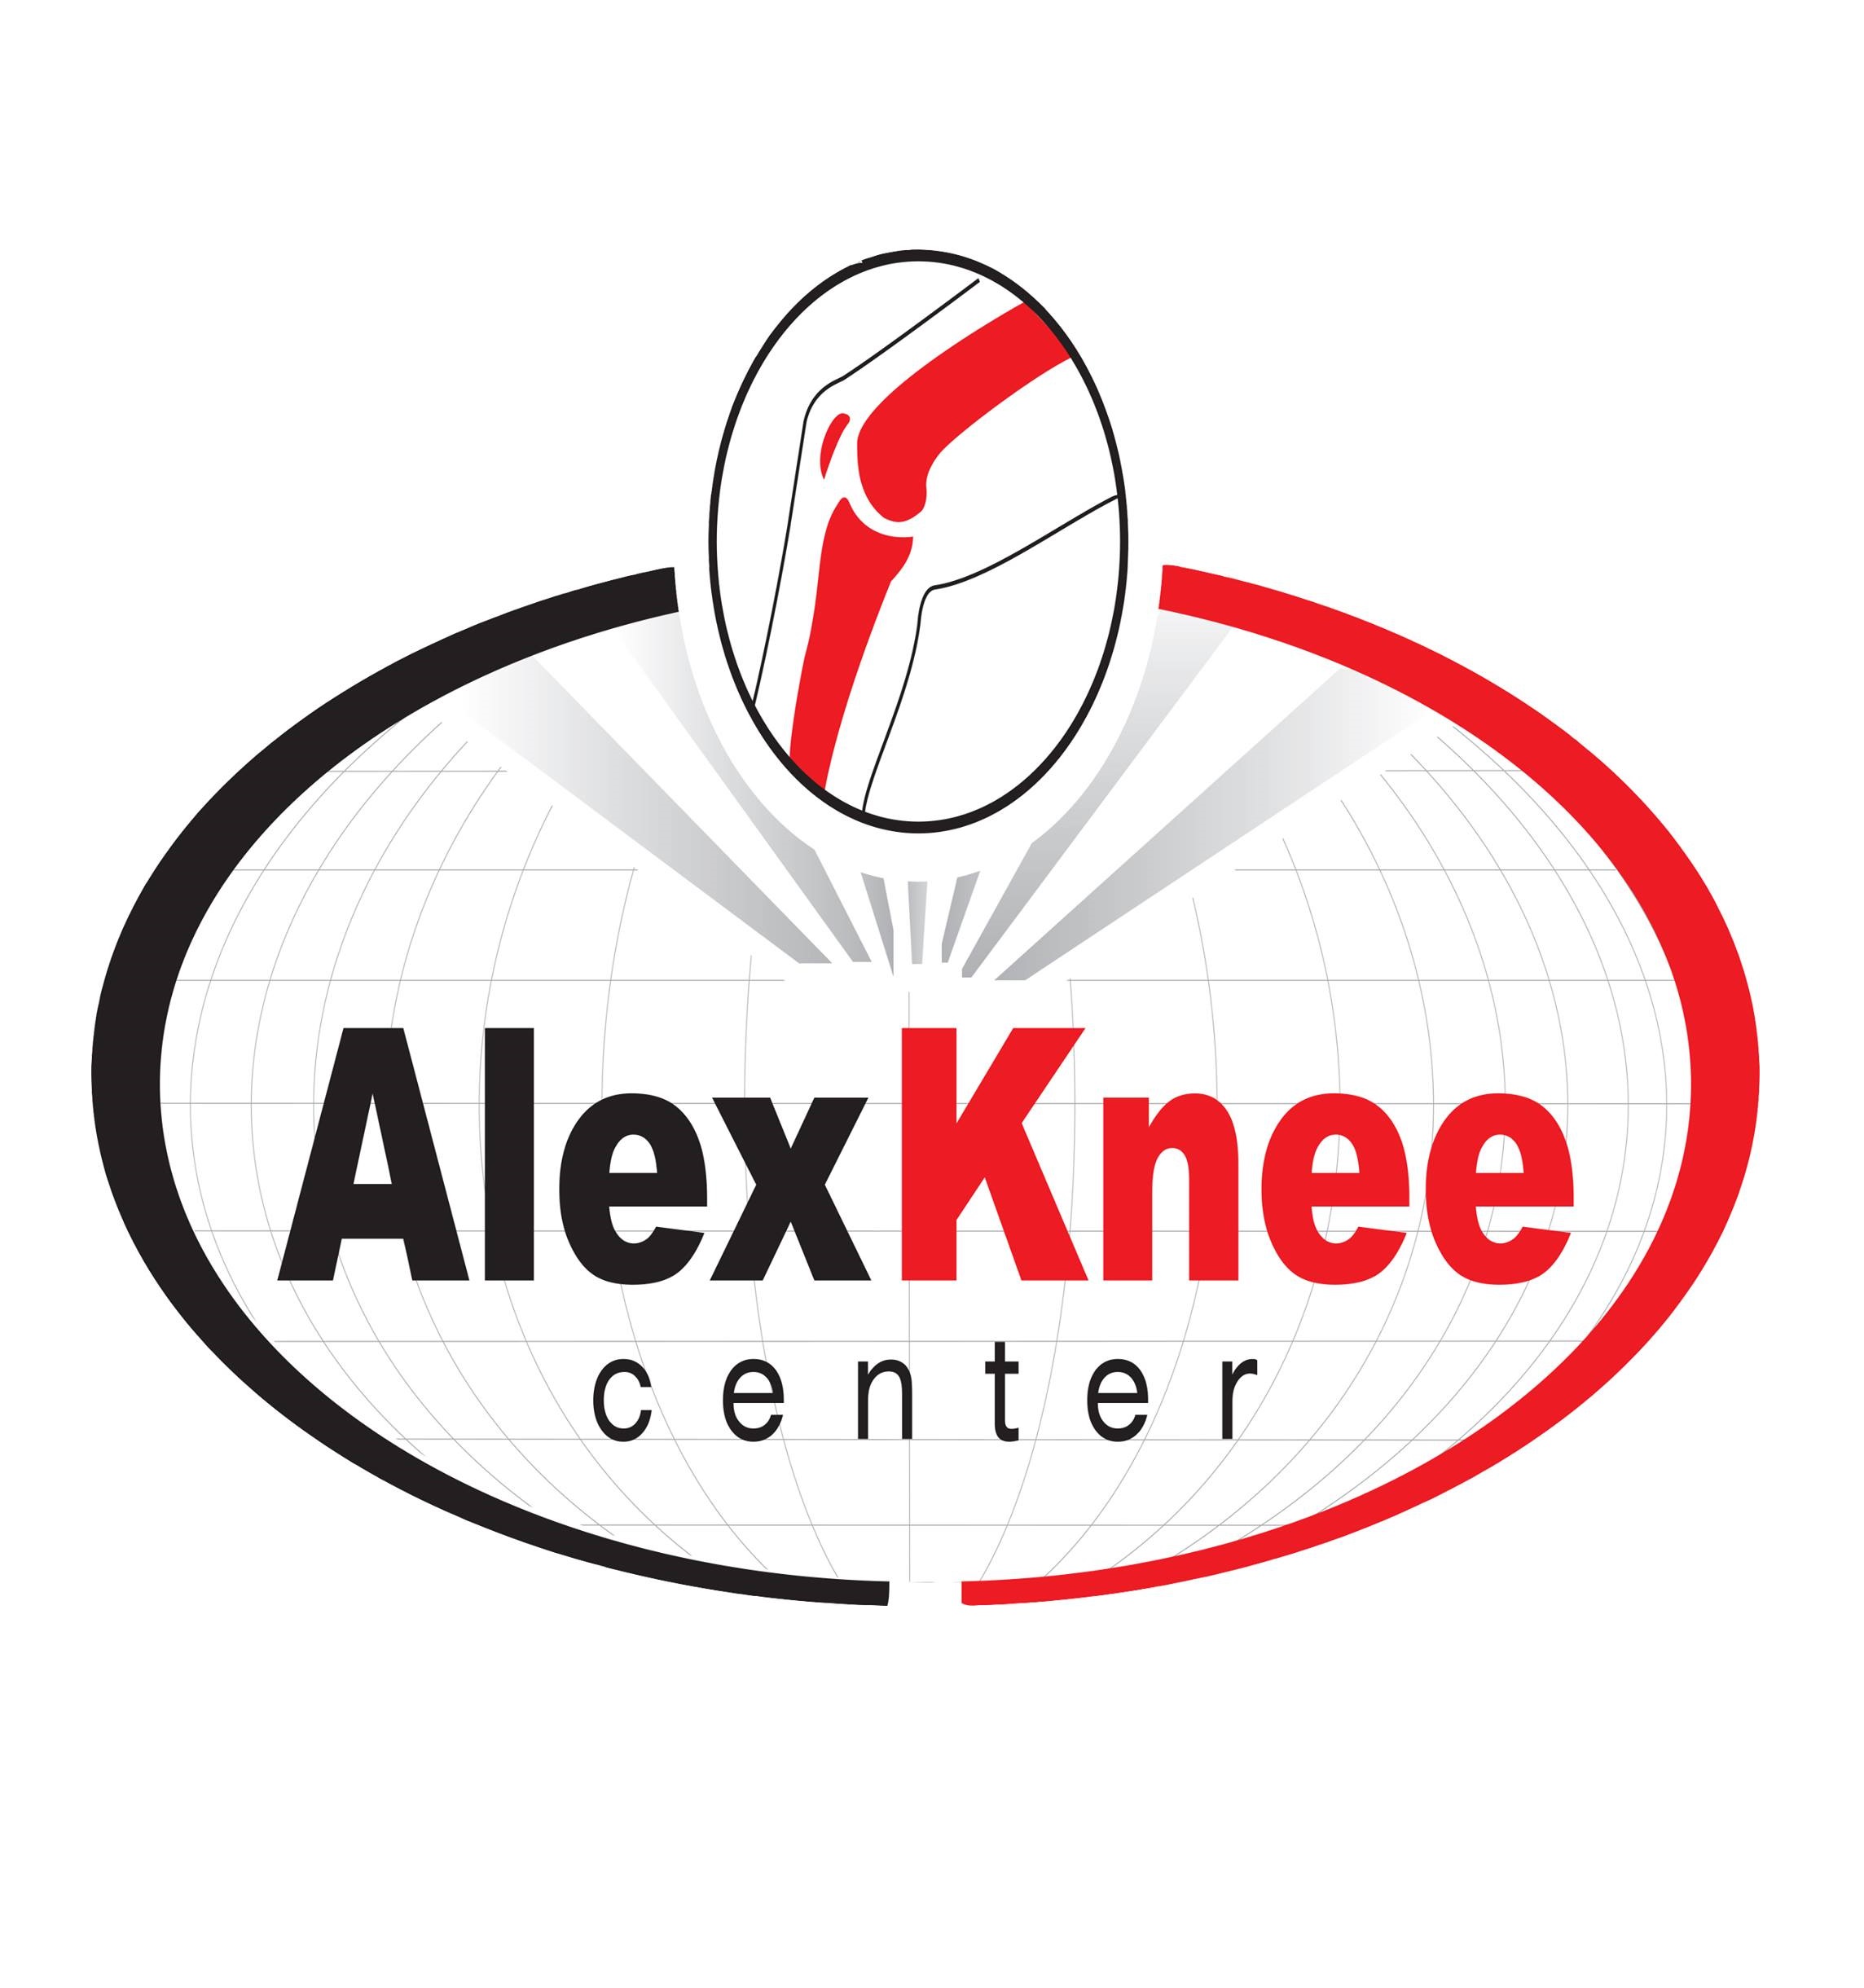 Alex Knee Center